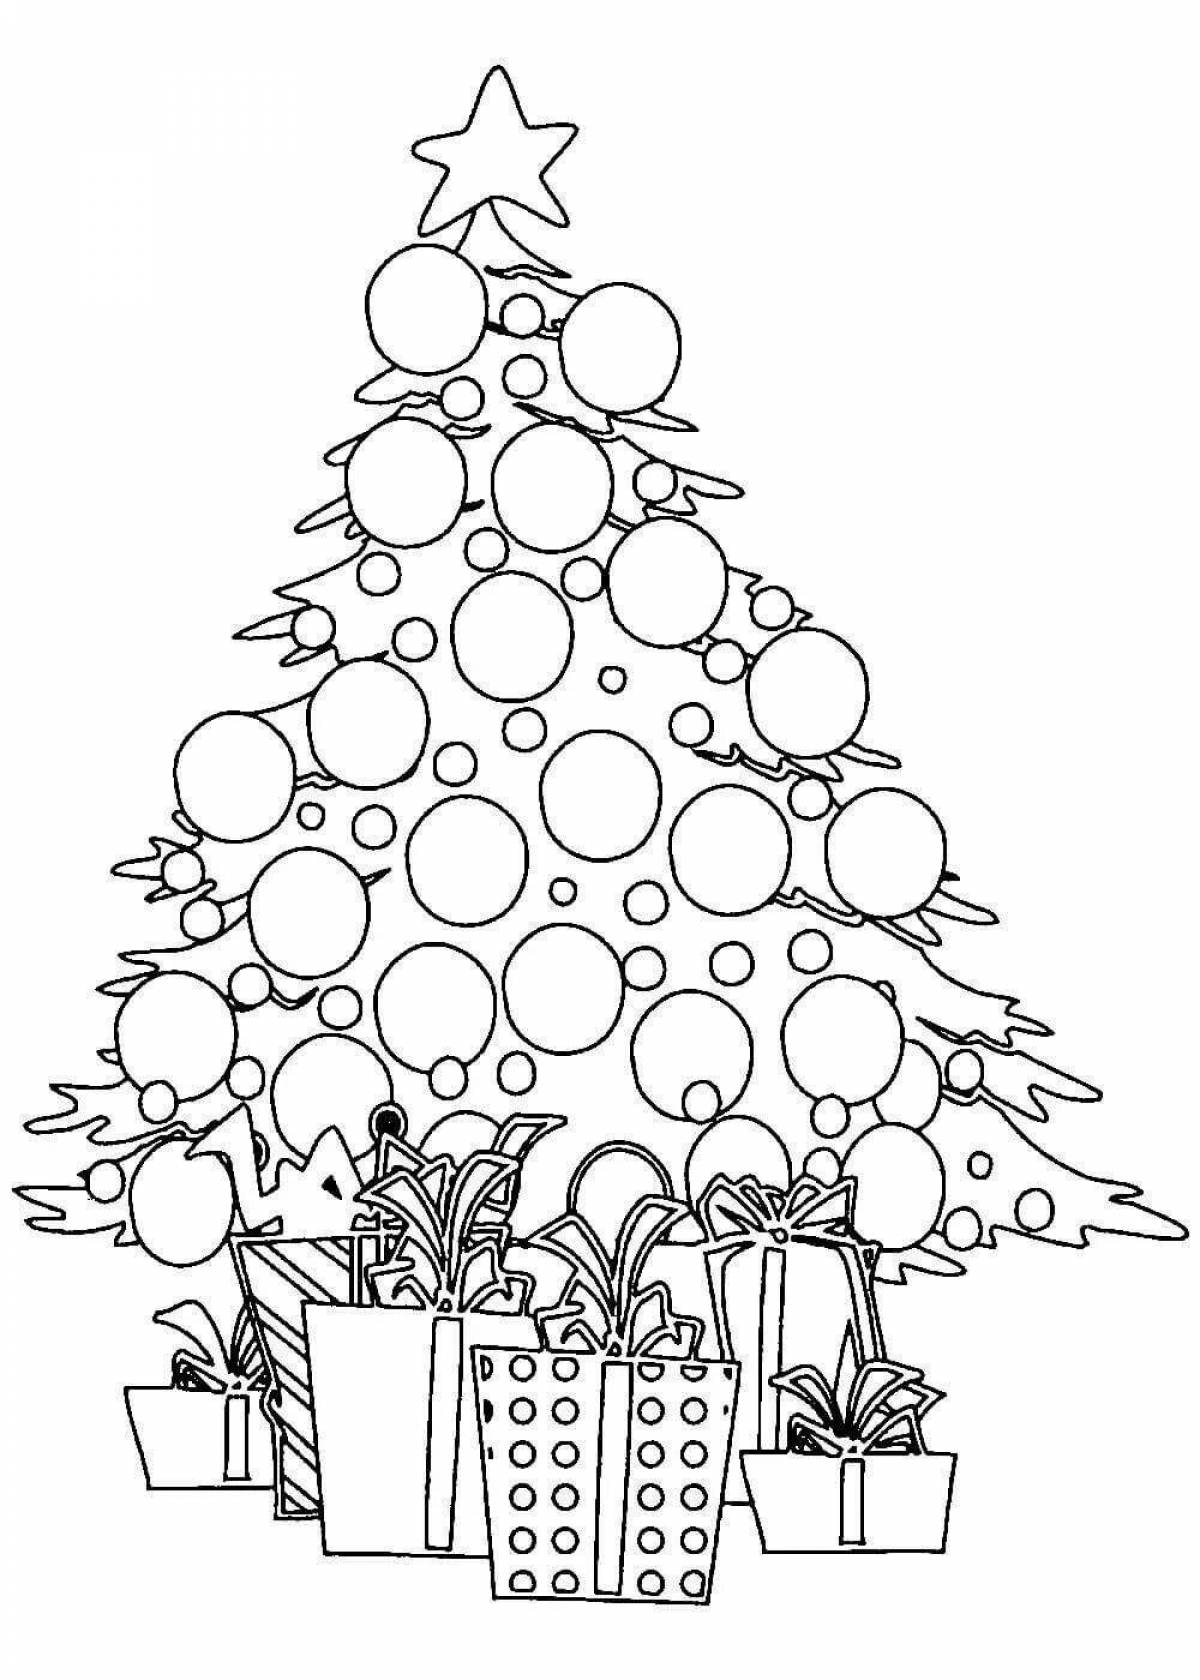 Animated Christmas tree with balls